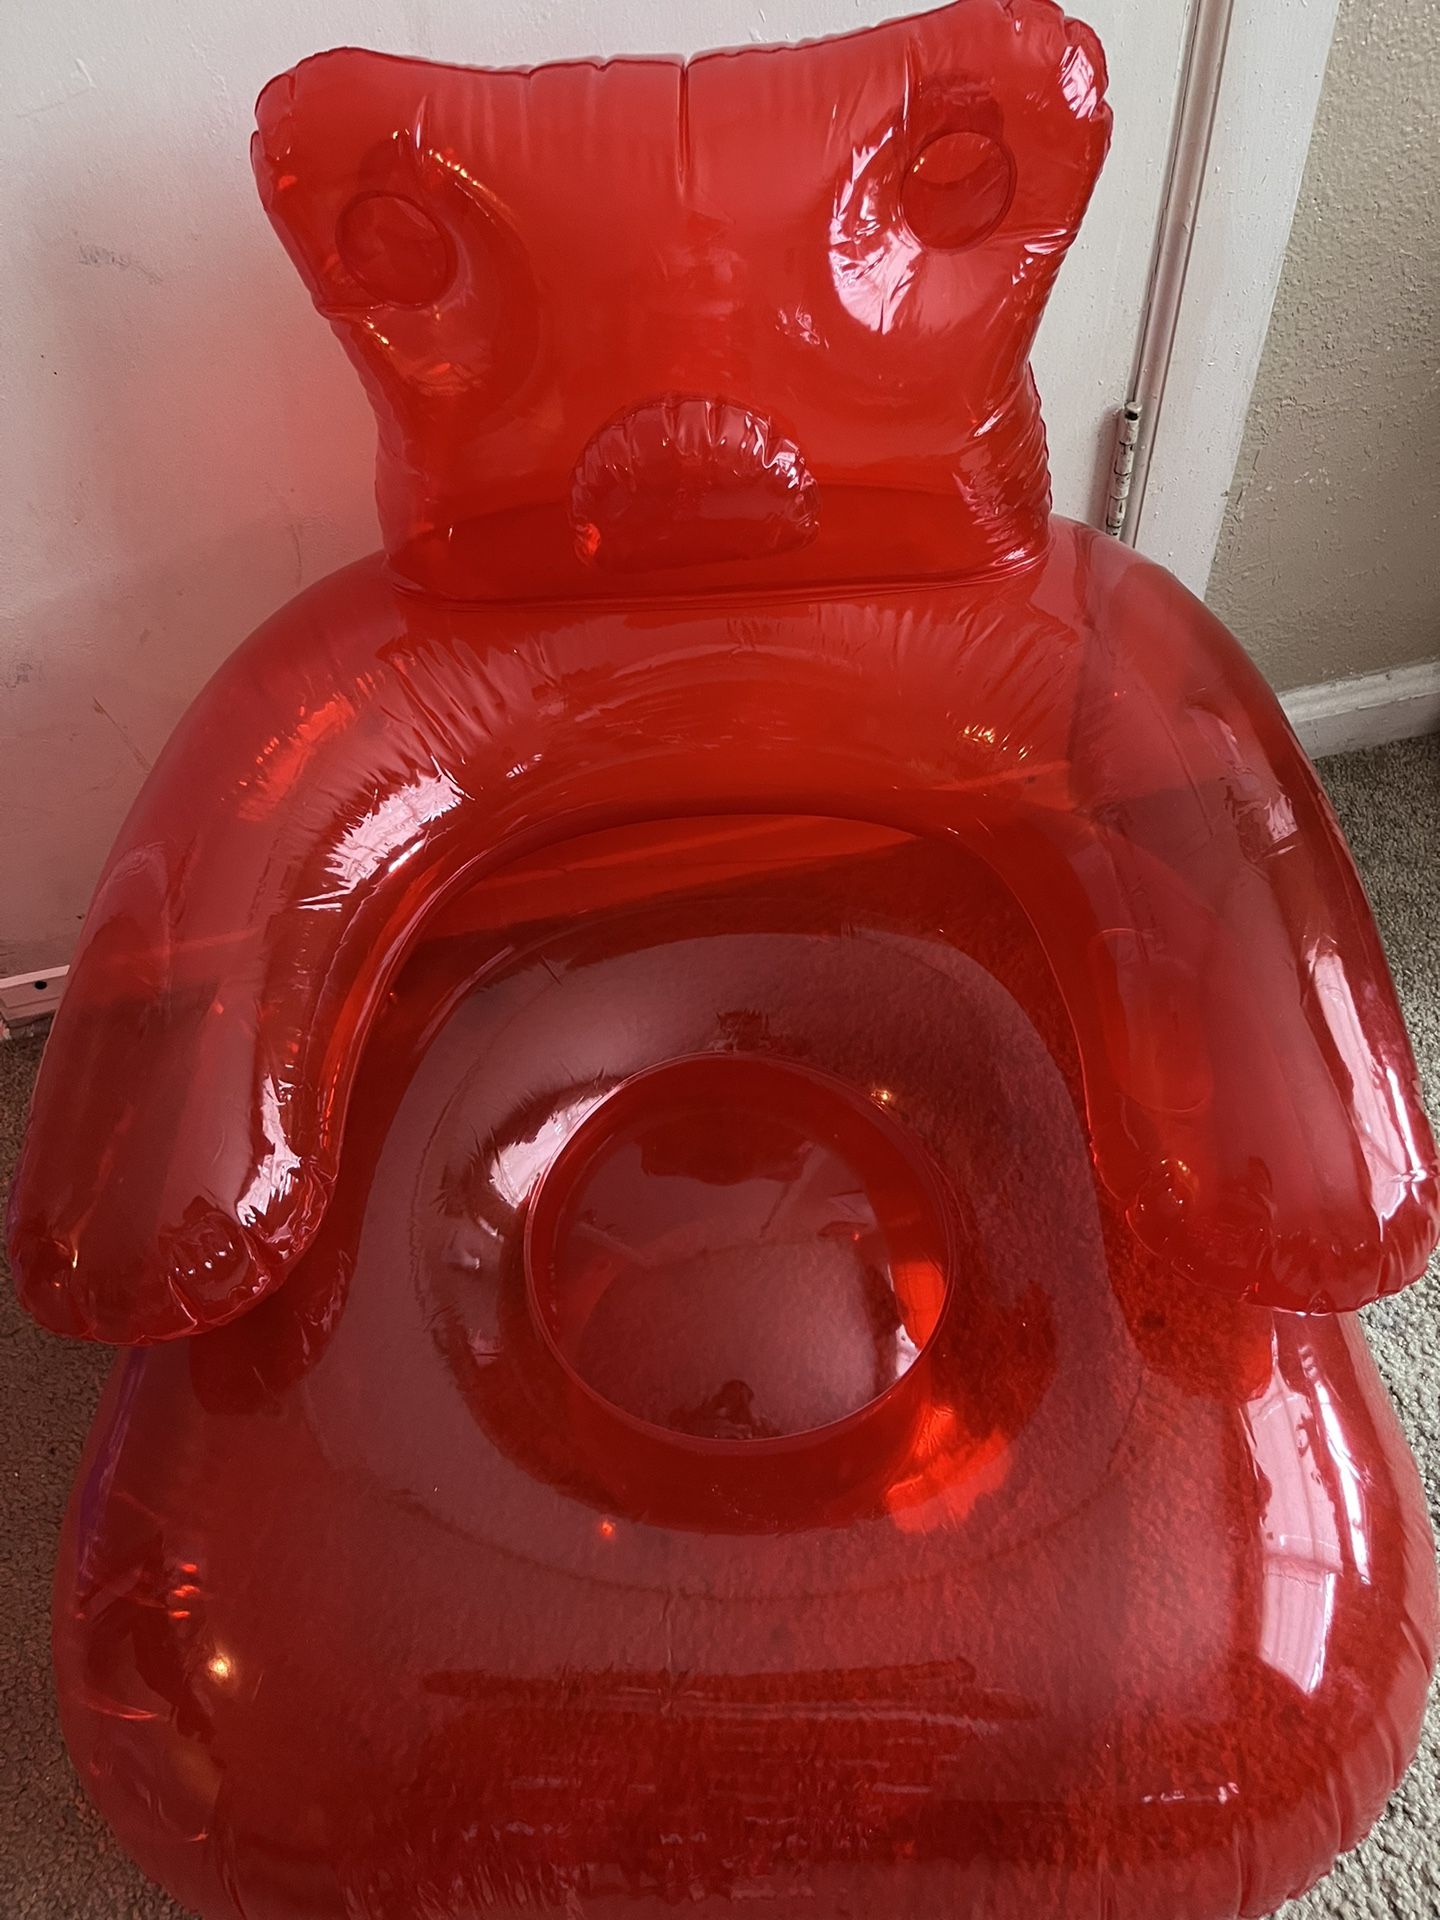 Gummy Bear Inflatable Chair 